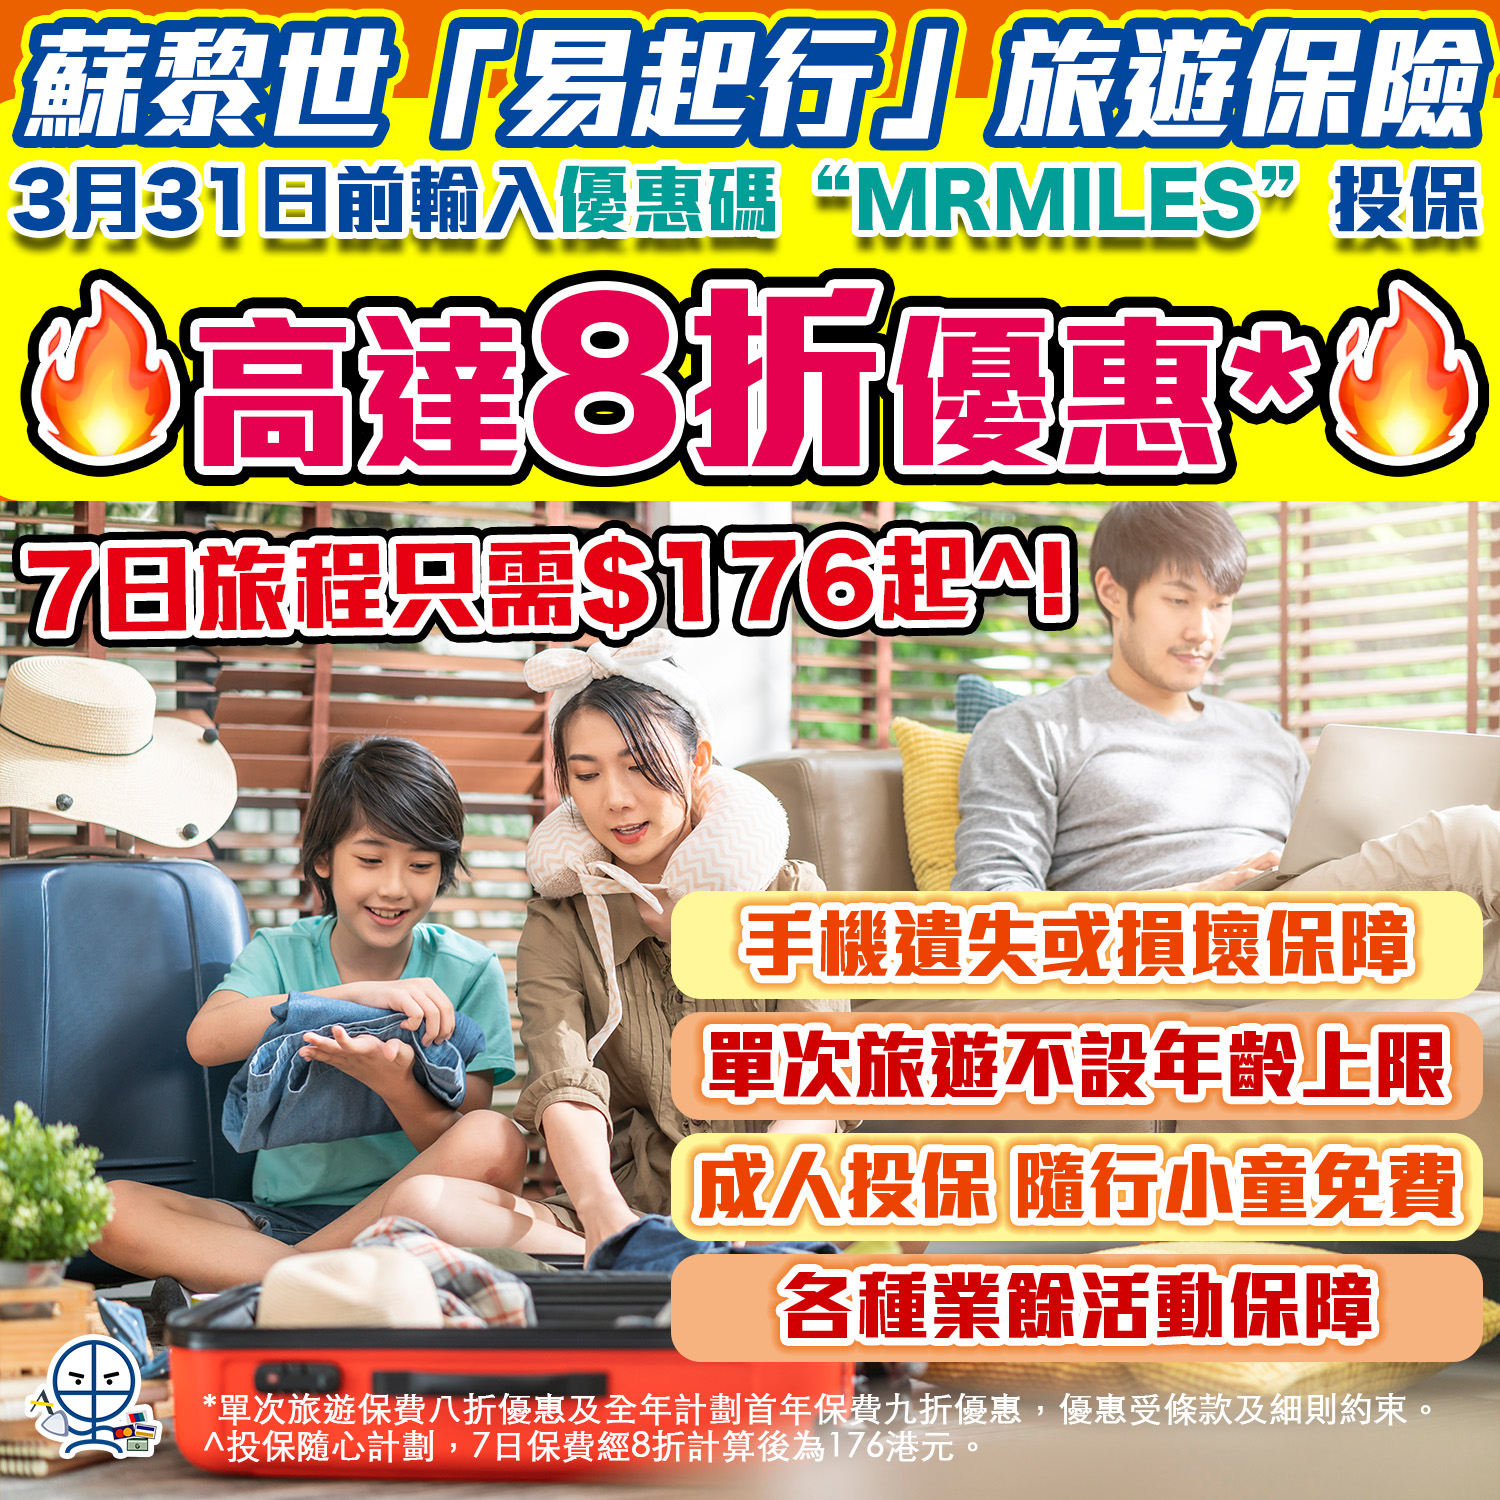 【蘇黎世「易起行」旅遊保險】快閃優惠7日旅遊保只需HK$176起🔥特點：手機遺失或損壞保障 、受保人年齡不設上限、成人投保小童免費‼️